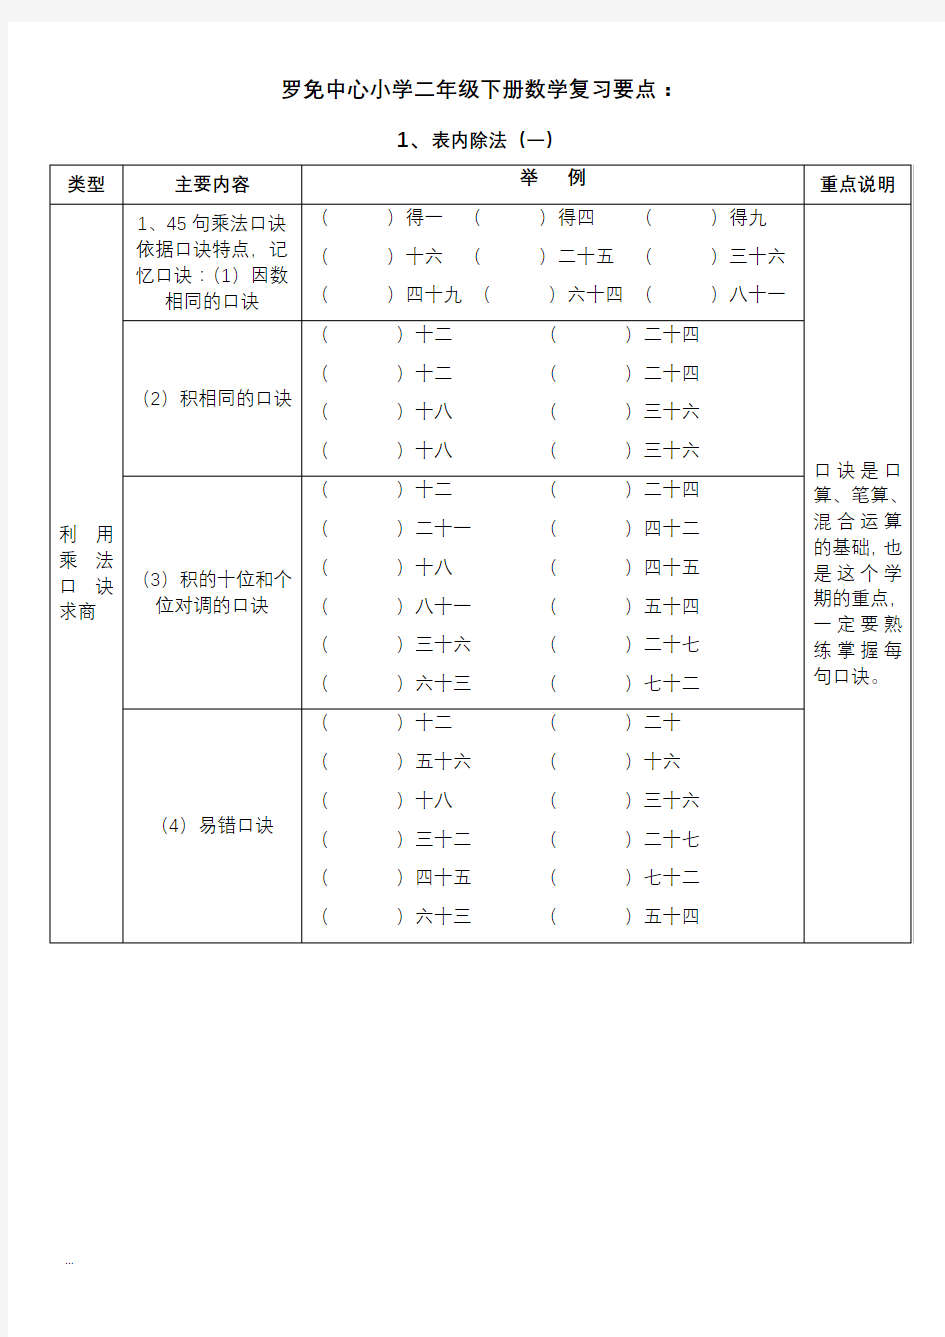 【深圳市】小学二年级下册数学练习题